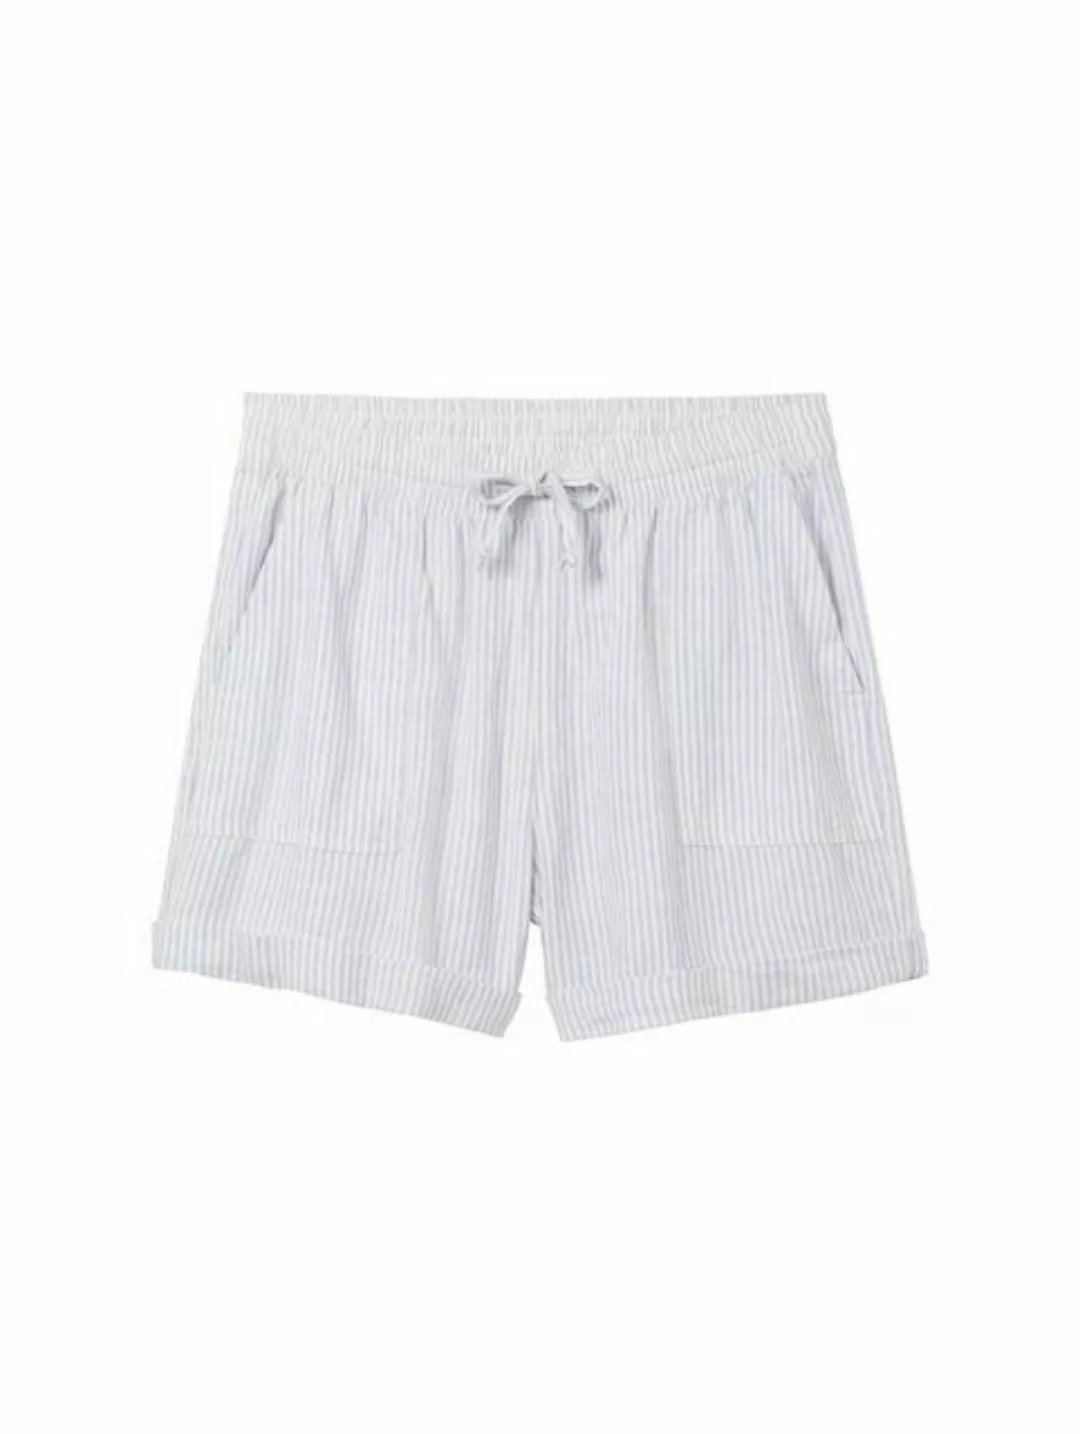 TOM TAILOR Denim Stoffhose easy linen shorts, light blue white small stripe günstig online kaufen